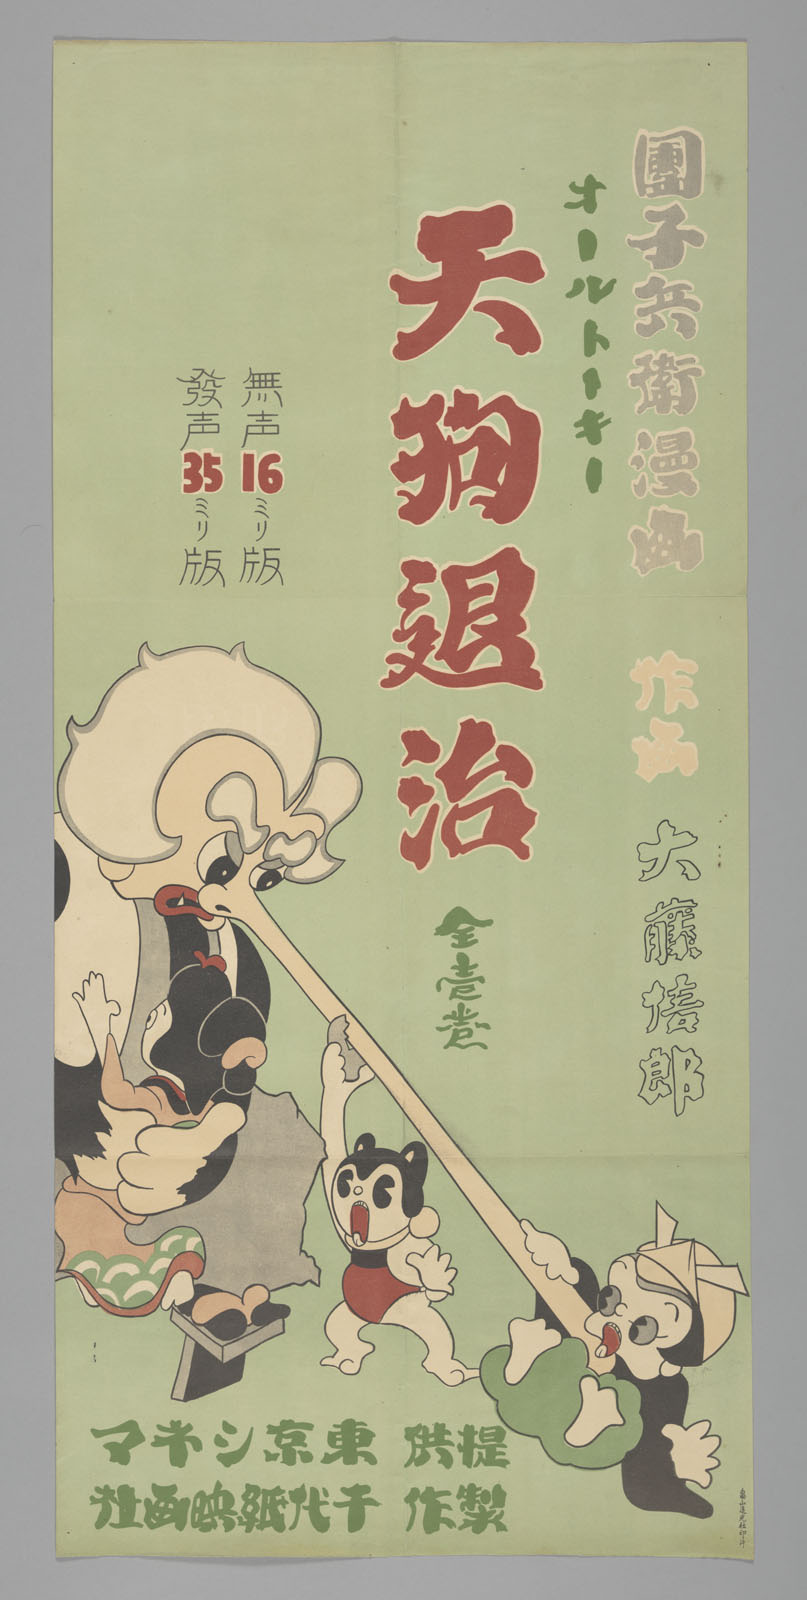 『天狗退治』（1934年）ポスター